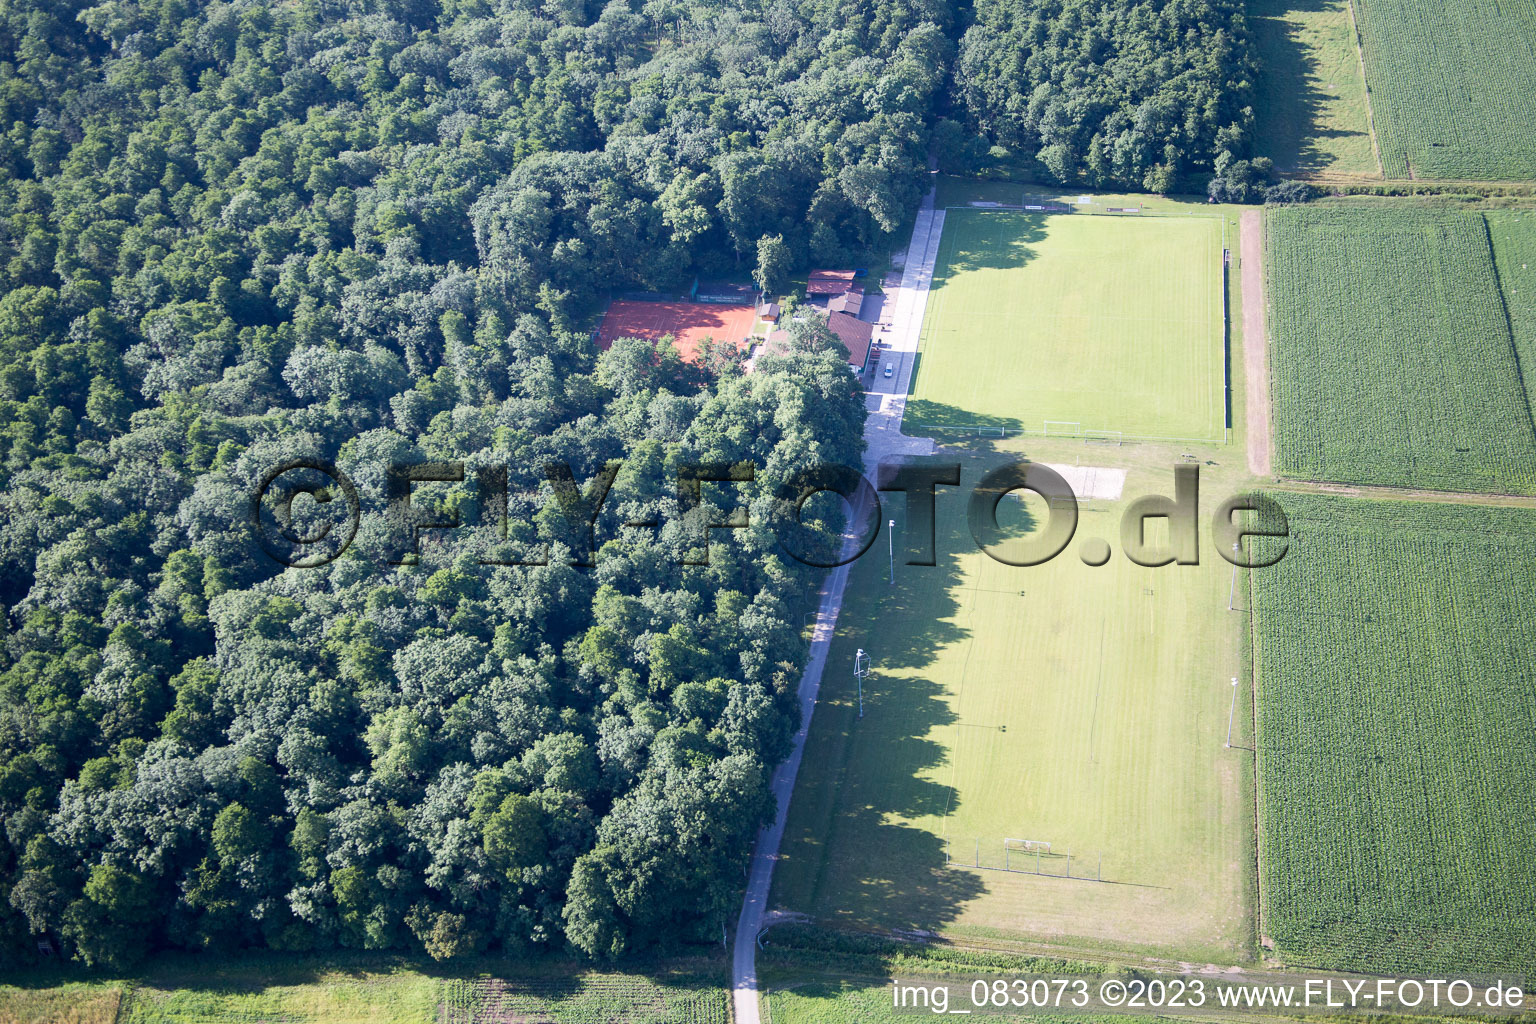 Photographie aérienne de Freckenfeld dans le département Rhénanie-Palatinat, Allemagne